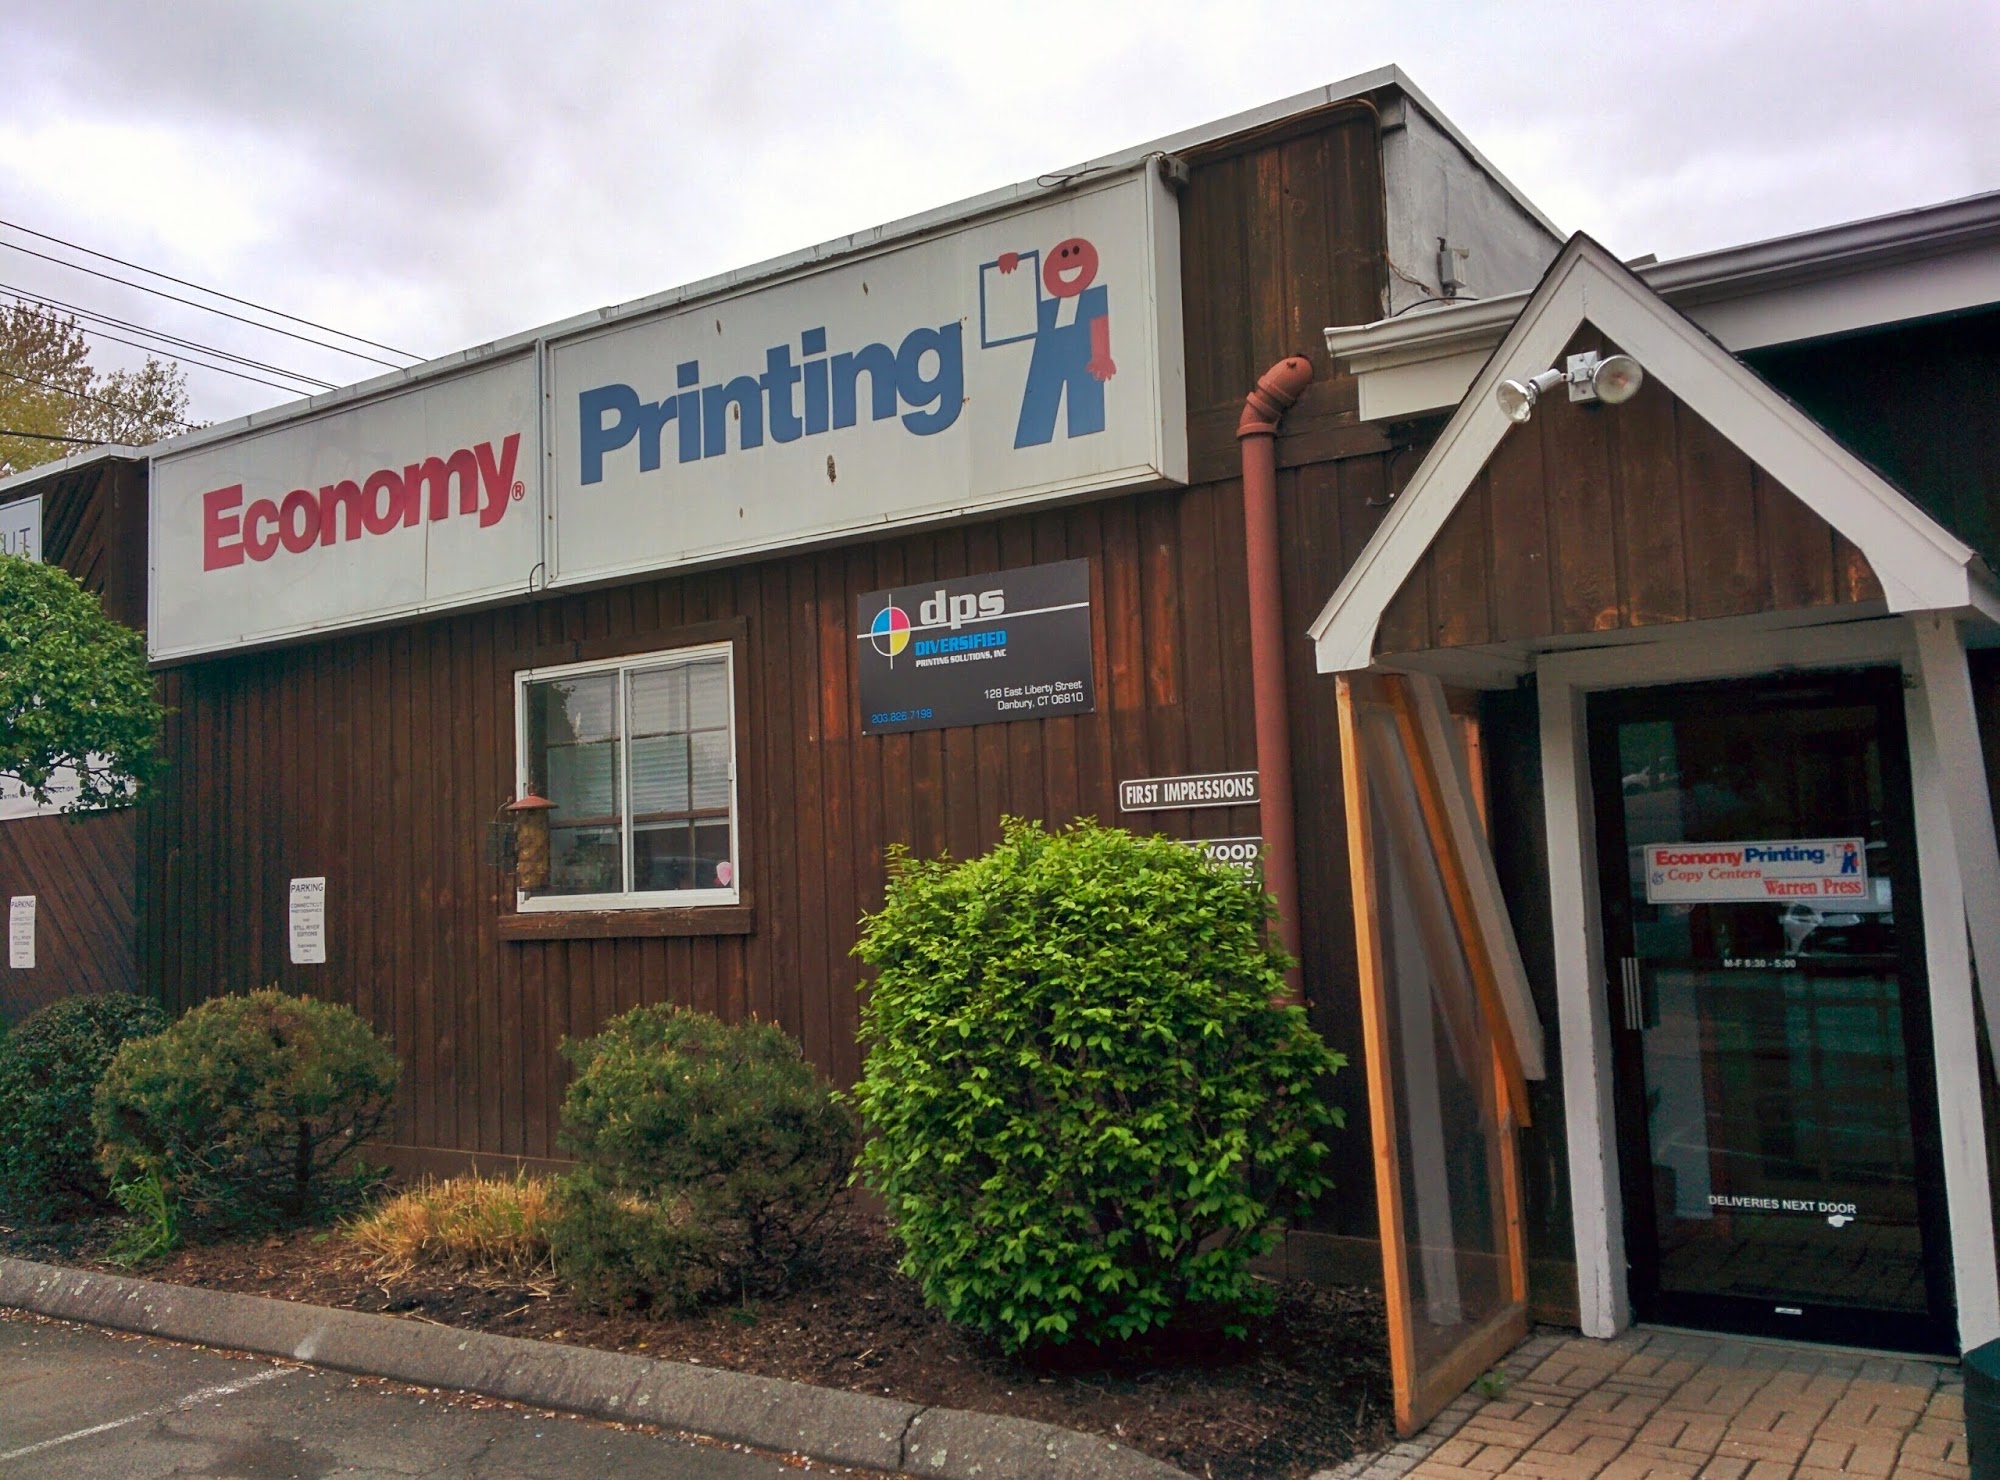 Economy Printing